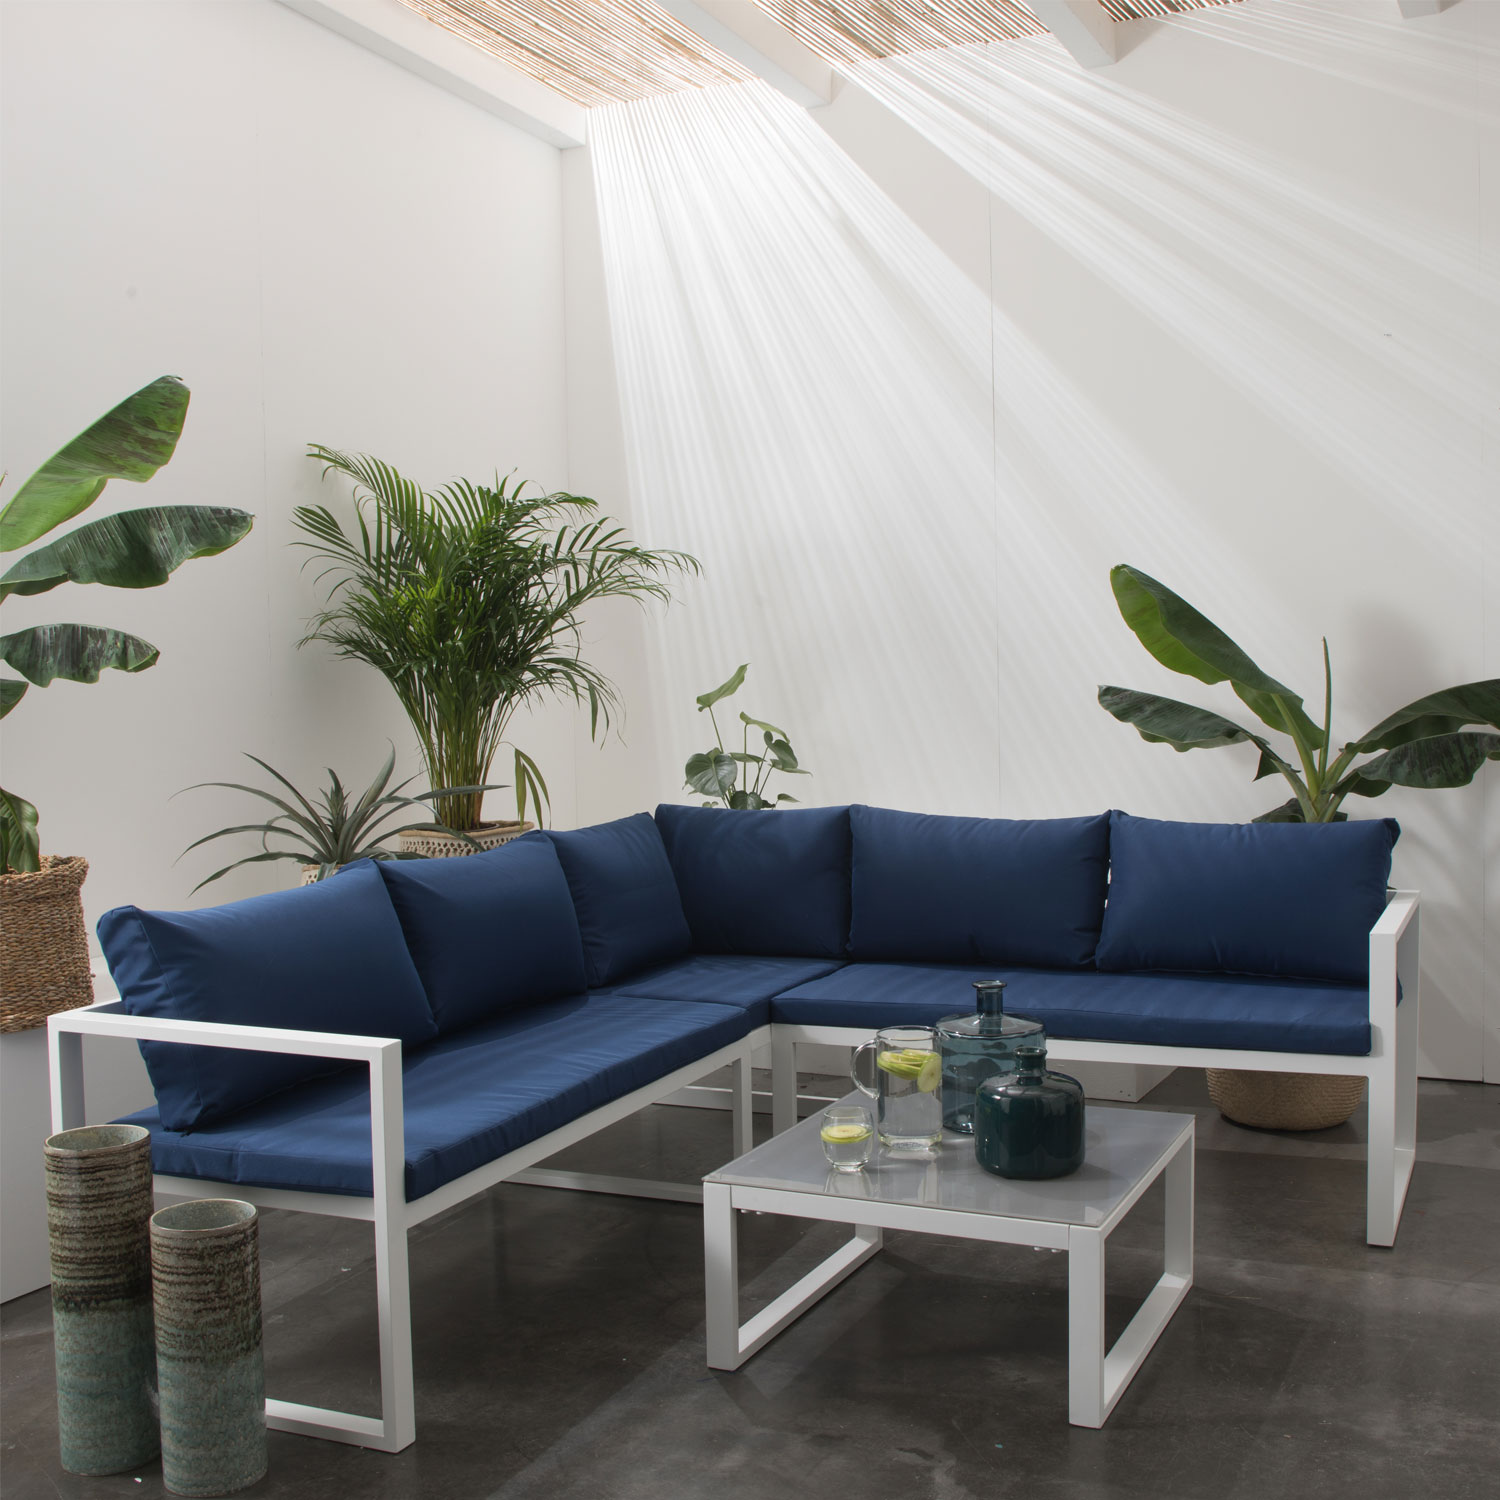 IBIZA mobiliário modular de jardim em tecido azul 4 lugares - alumínio branco